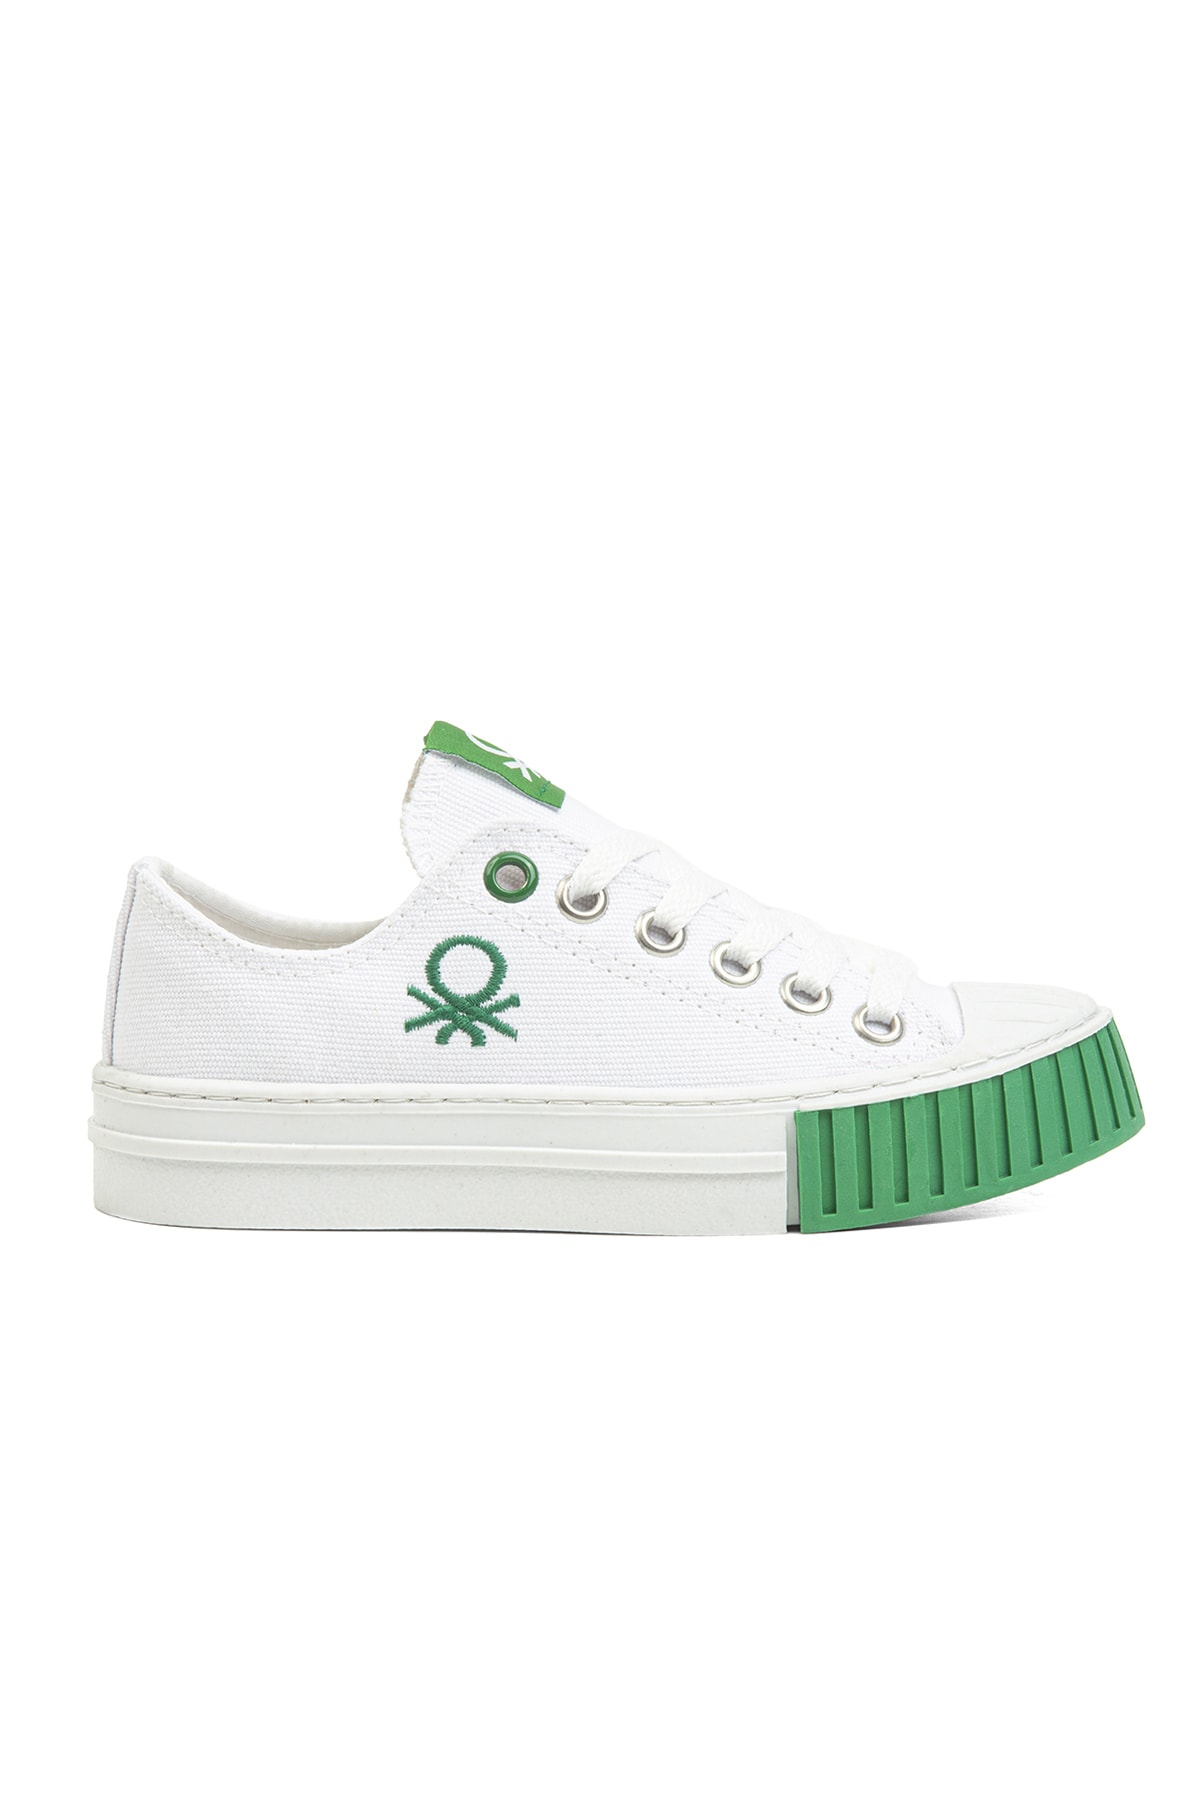 Benetton ® | Bn-30657 - 3114 Beyaz - Çocuk Spor Ayakkabı